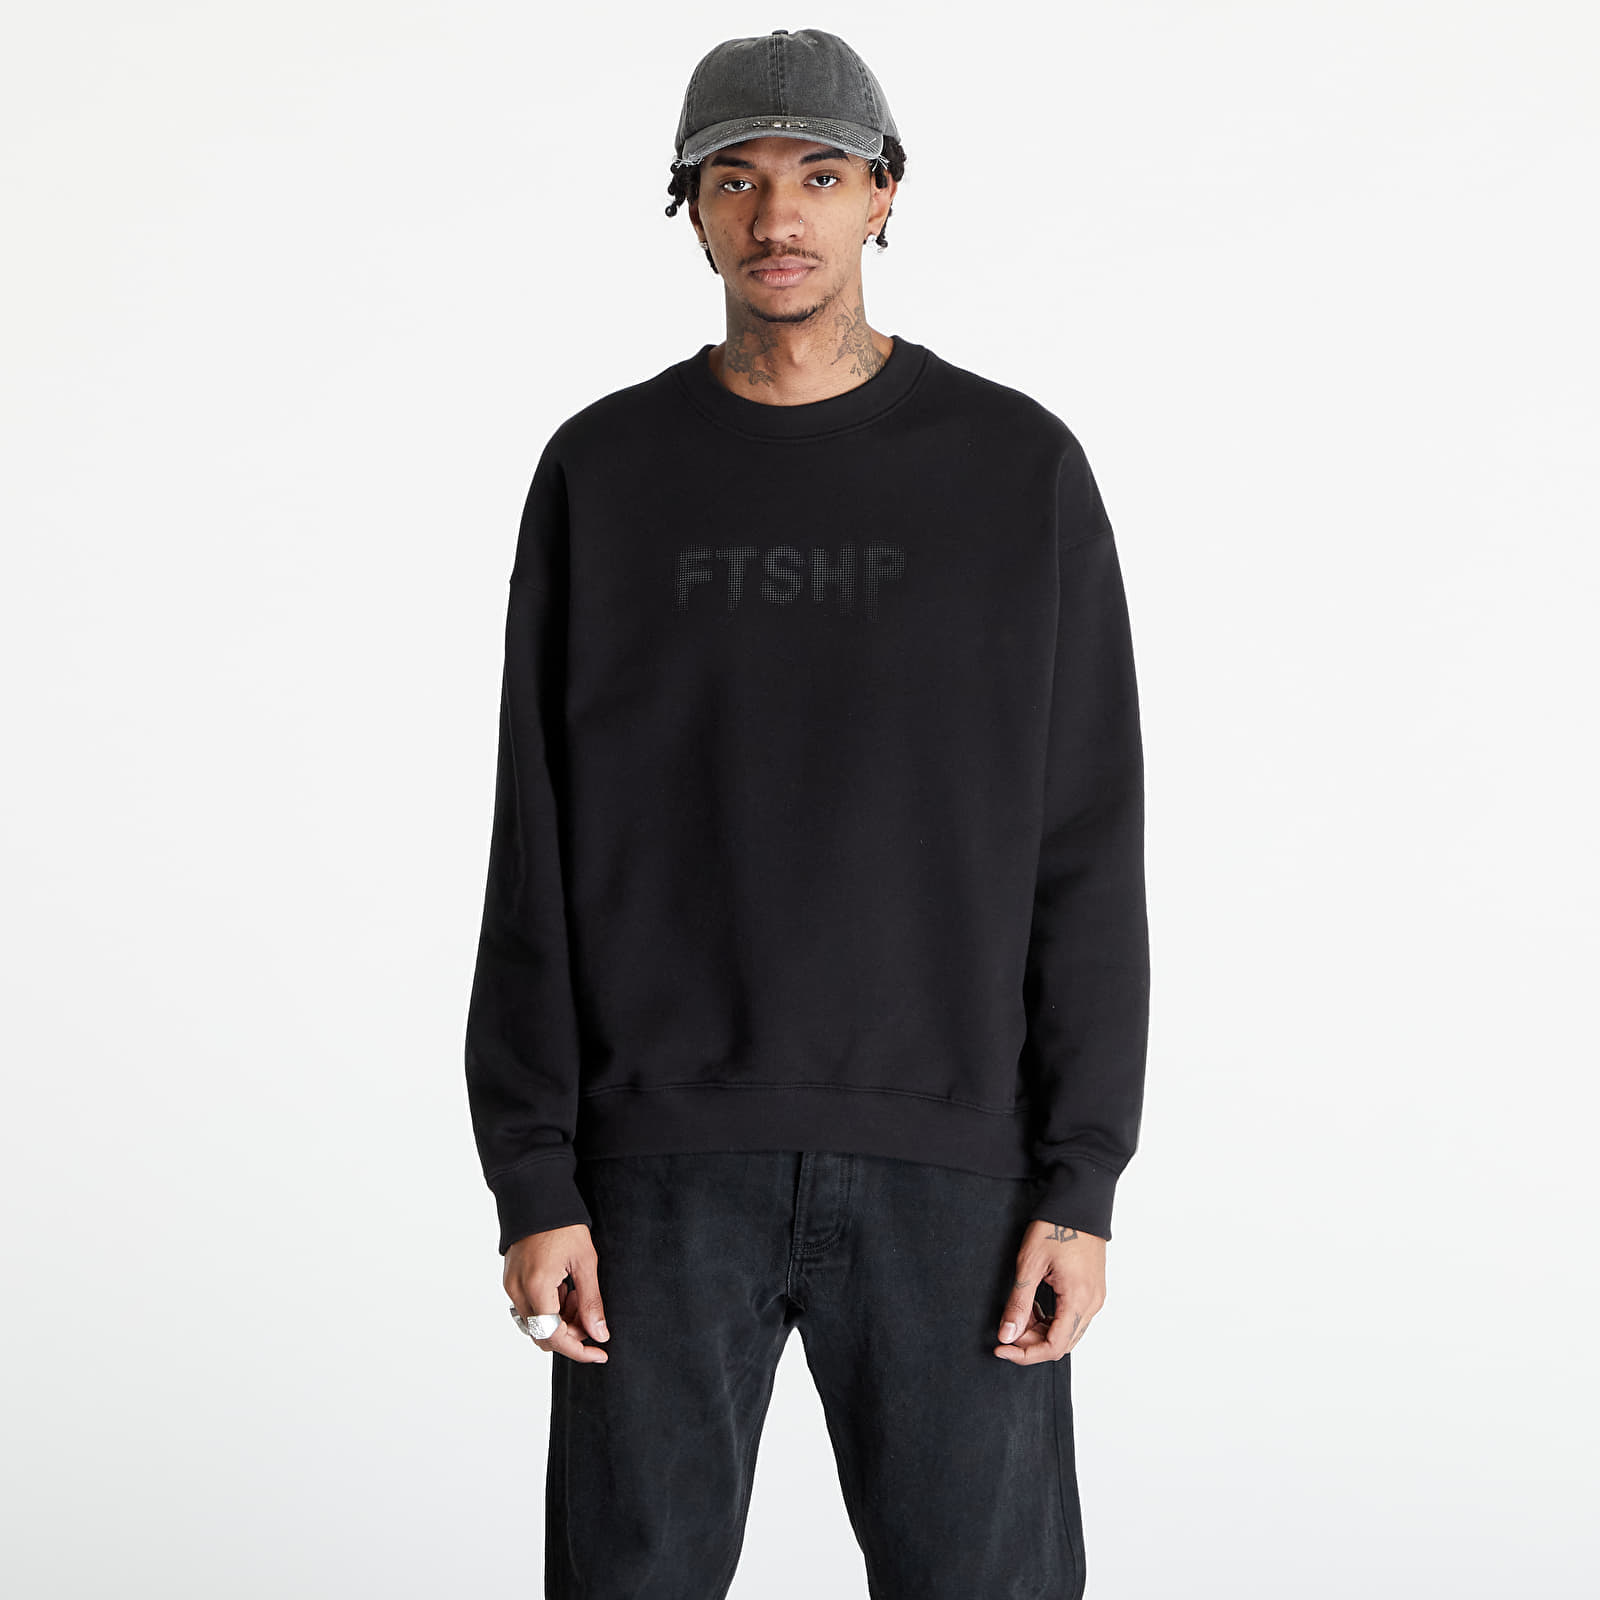 Footshop - FTSHP Halftone Crewneck Sweatshirt UNISEX Black